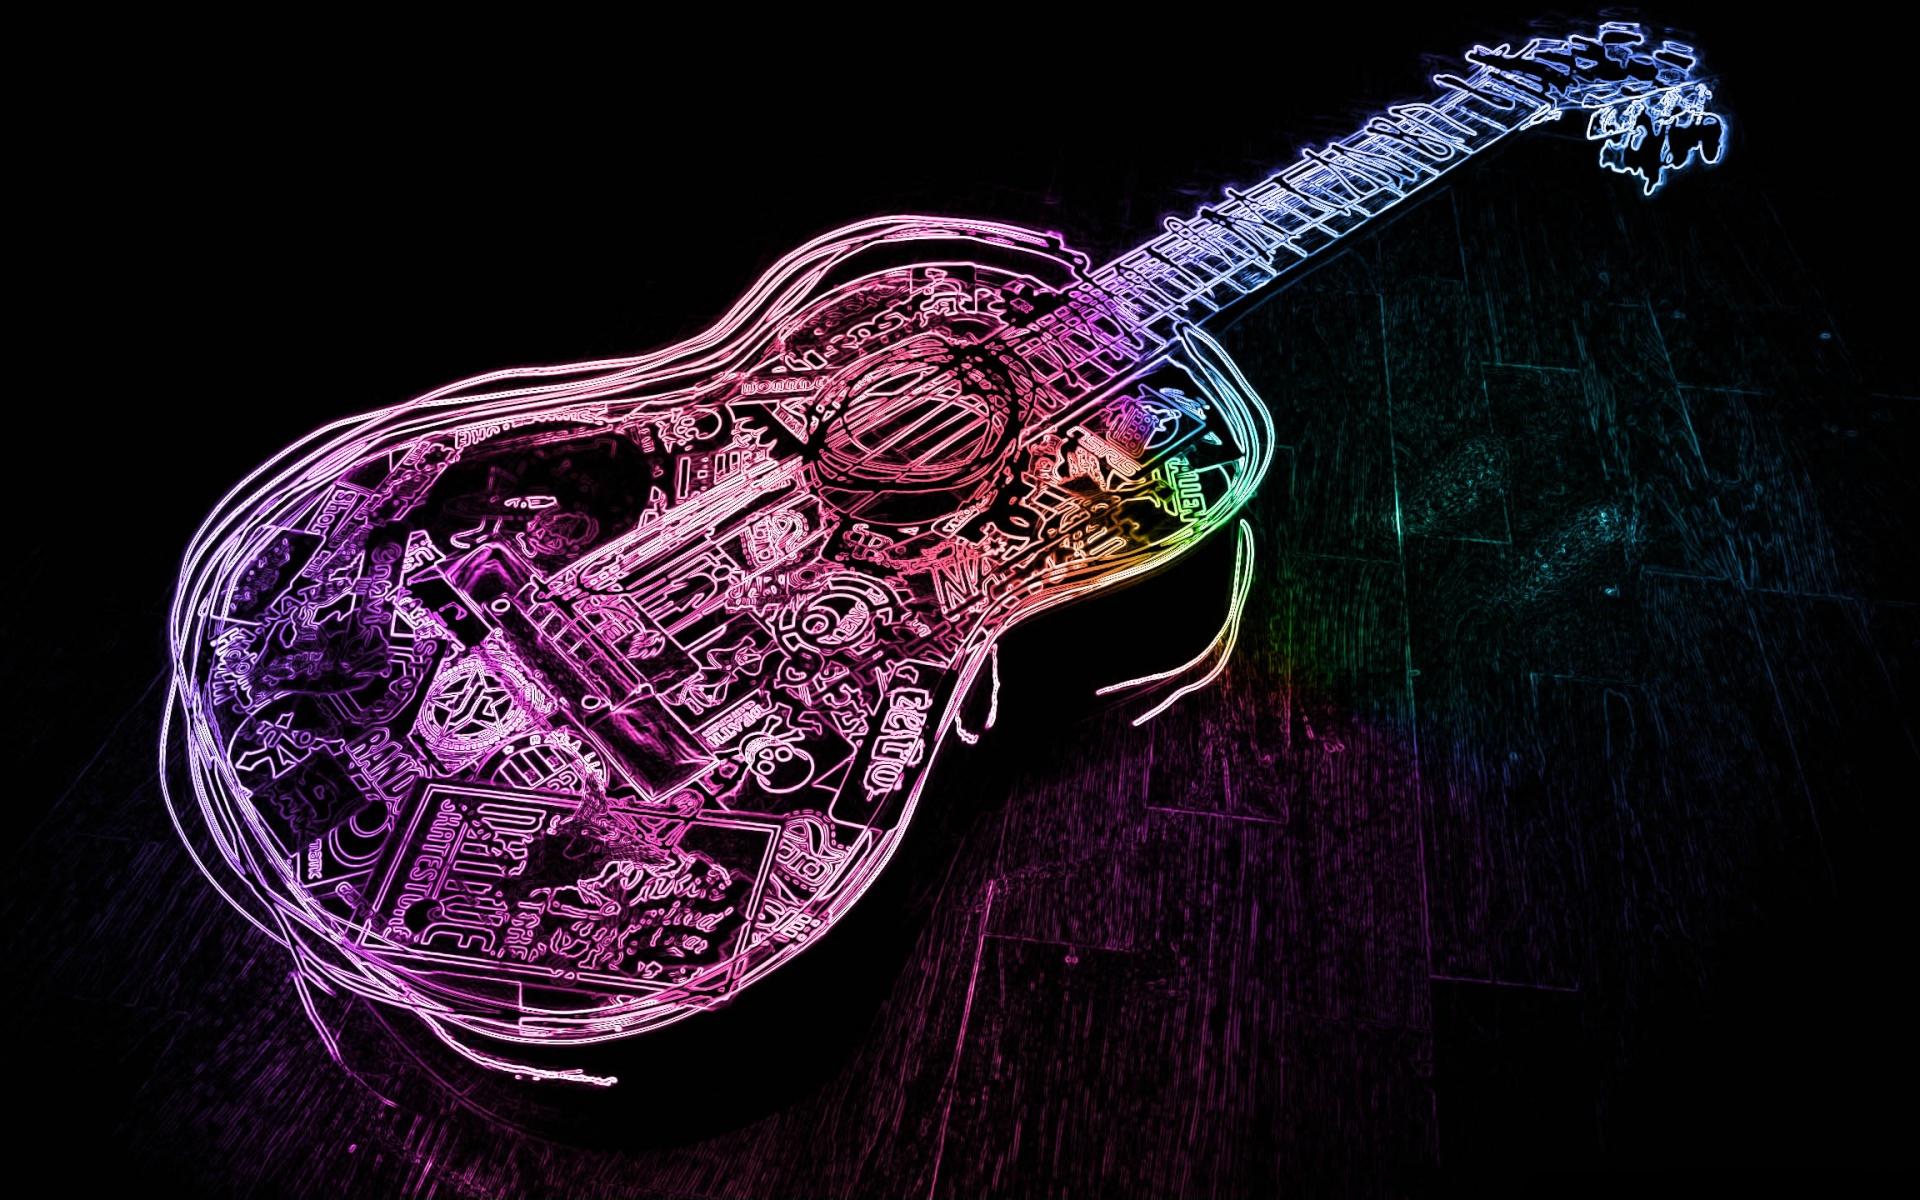 guitarra wallpaper,gitarre,musikinstrument,elektrische gitarre,gezupfte saiteninstrumente,lila